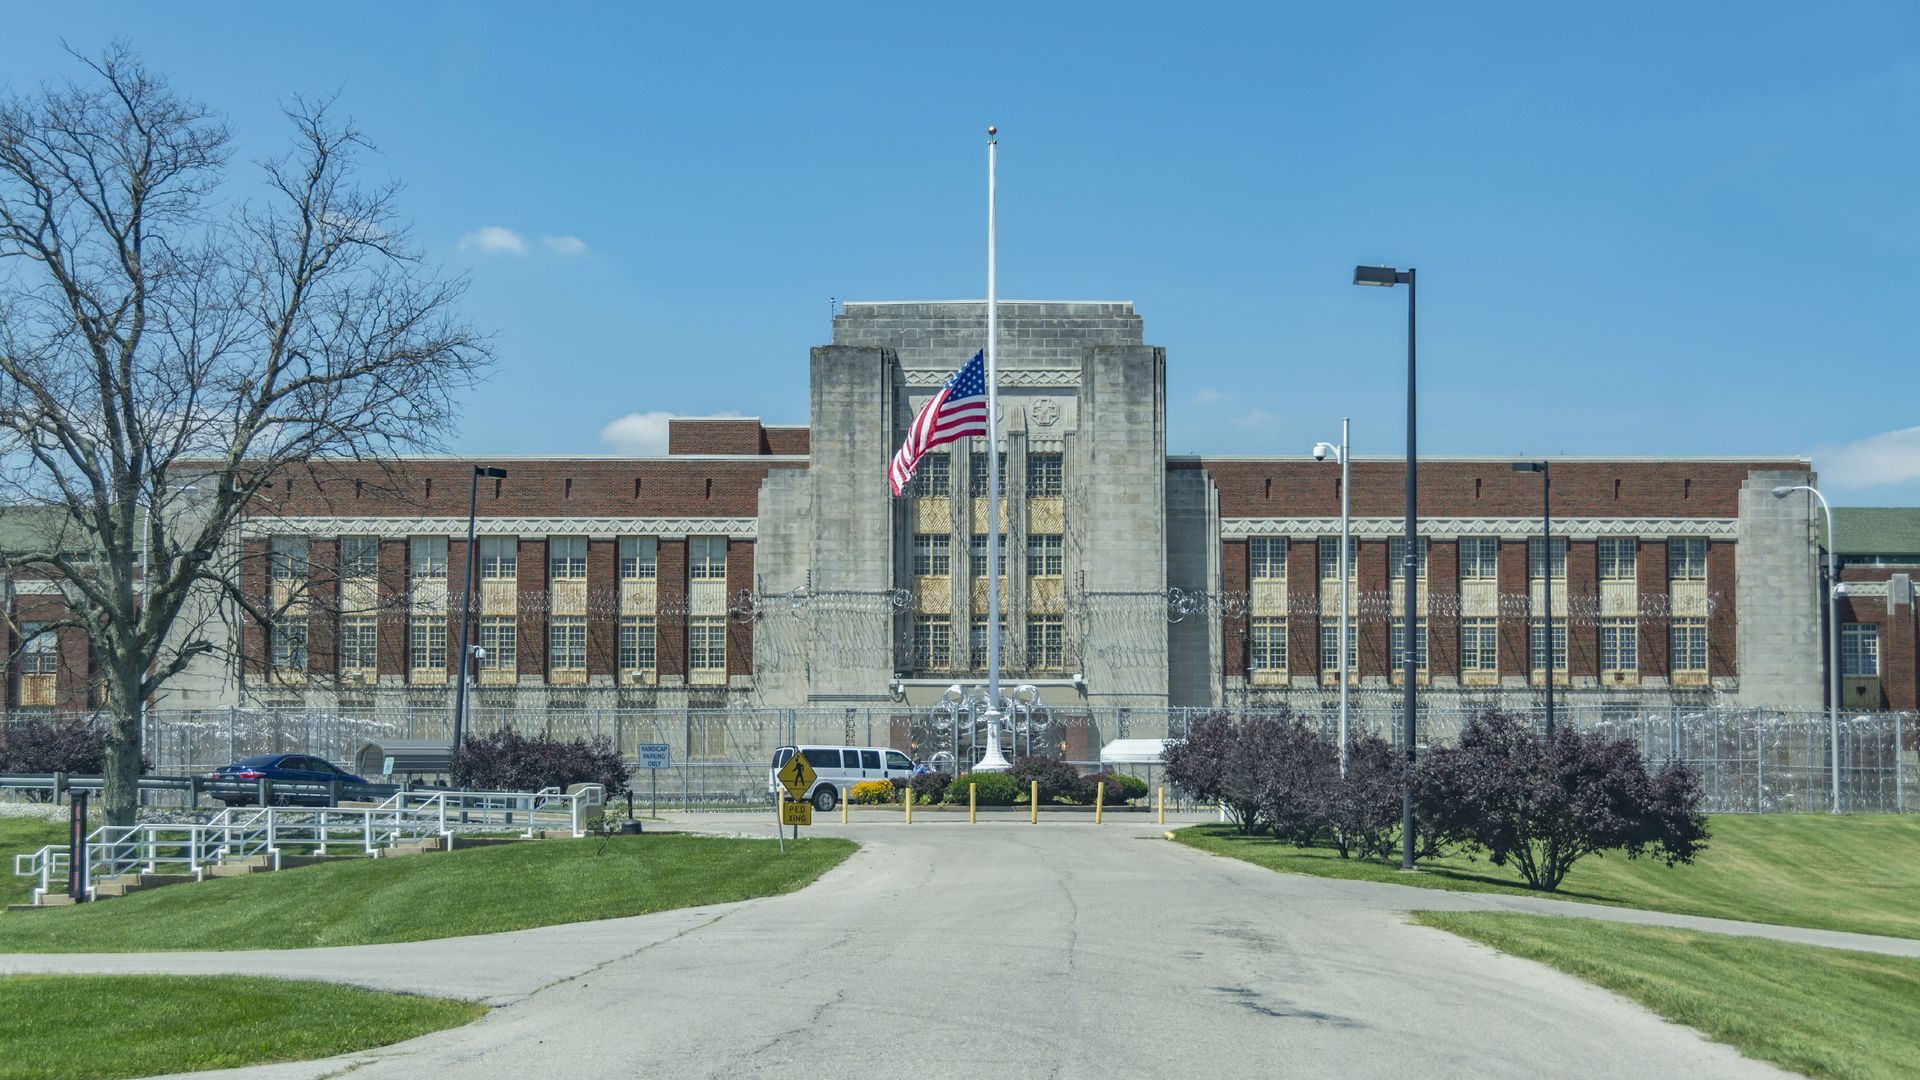 Federal Prison Medical Center in Lexington Kentucky USA.